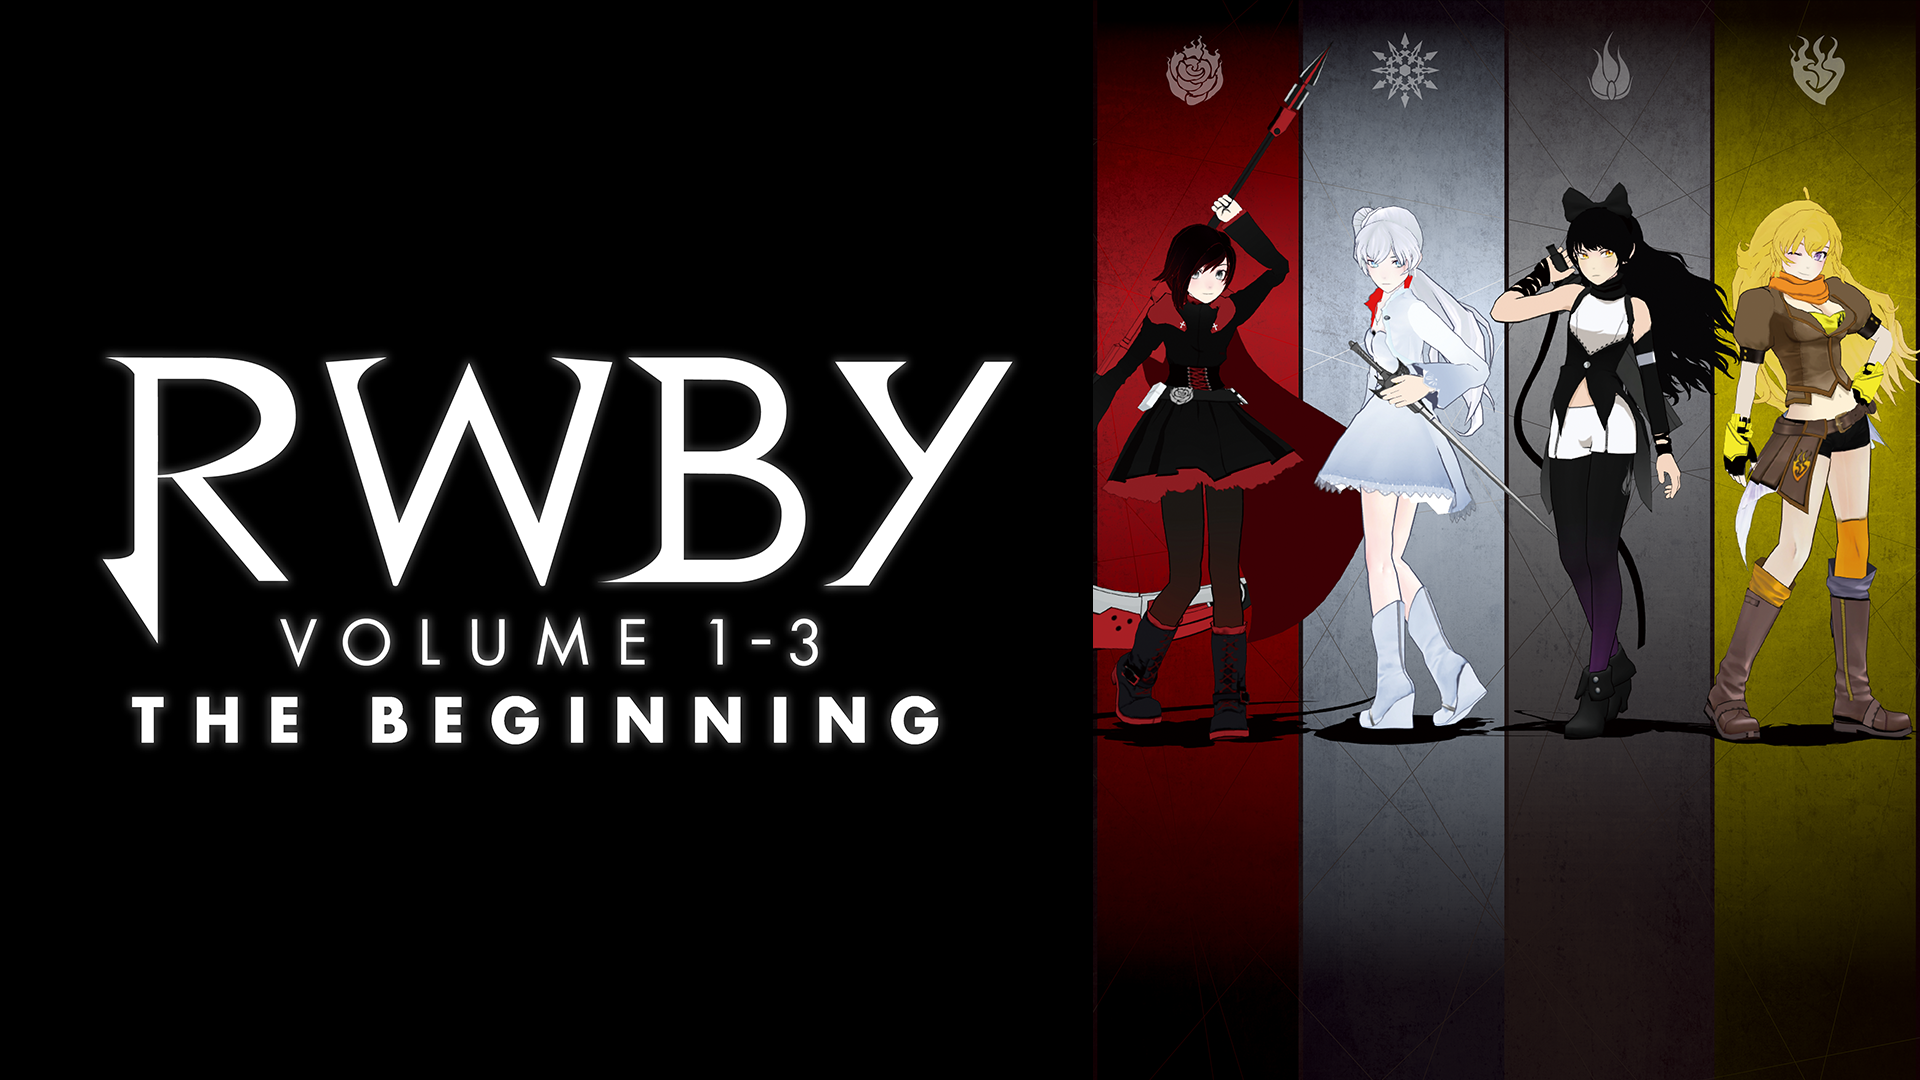 Rwby Volume 1 3 The Beginning 19年秋アニメ 新作アニメラインナップ Abemaアニメチャンネル